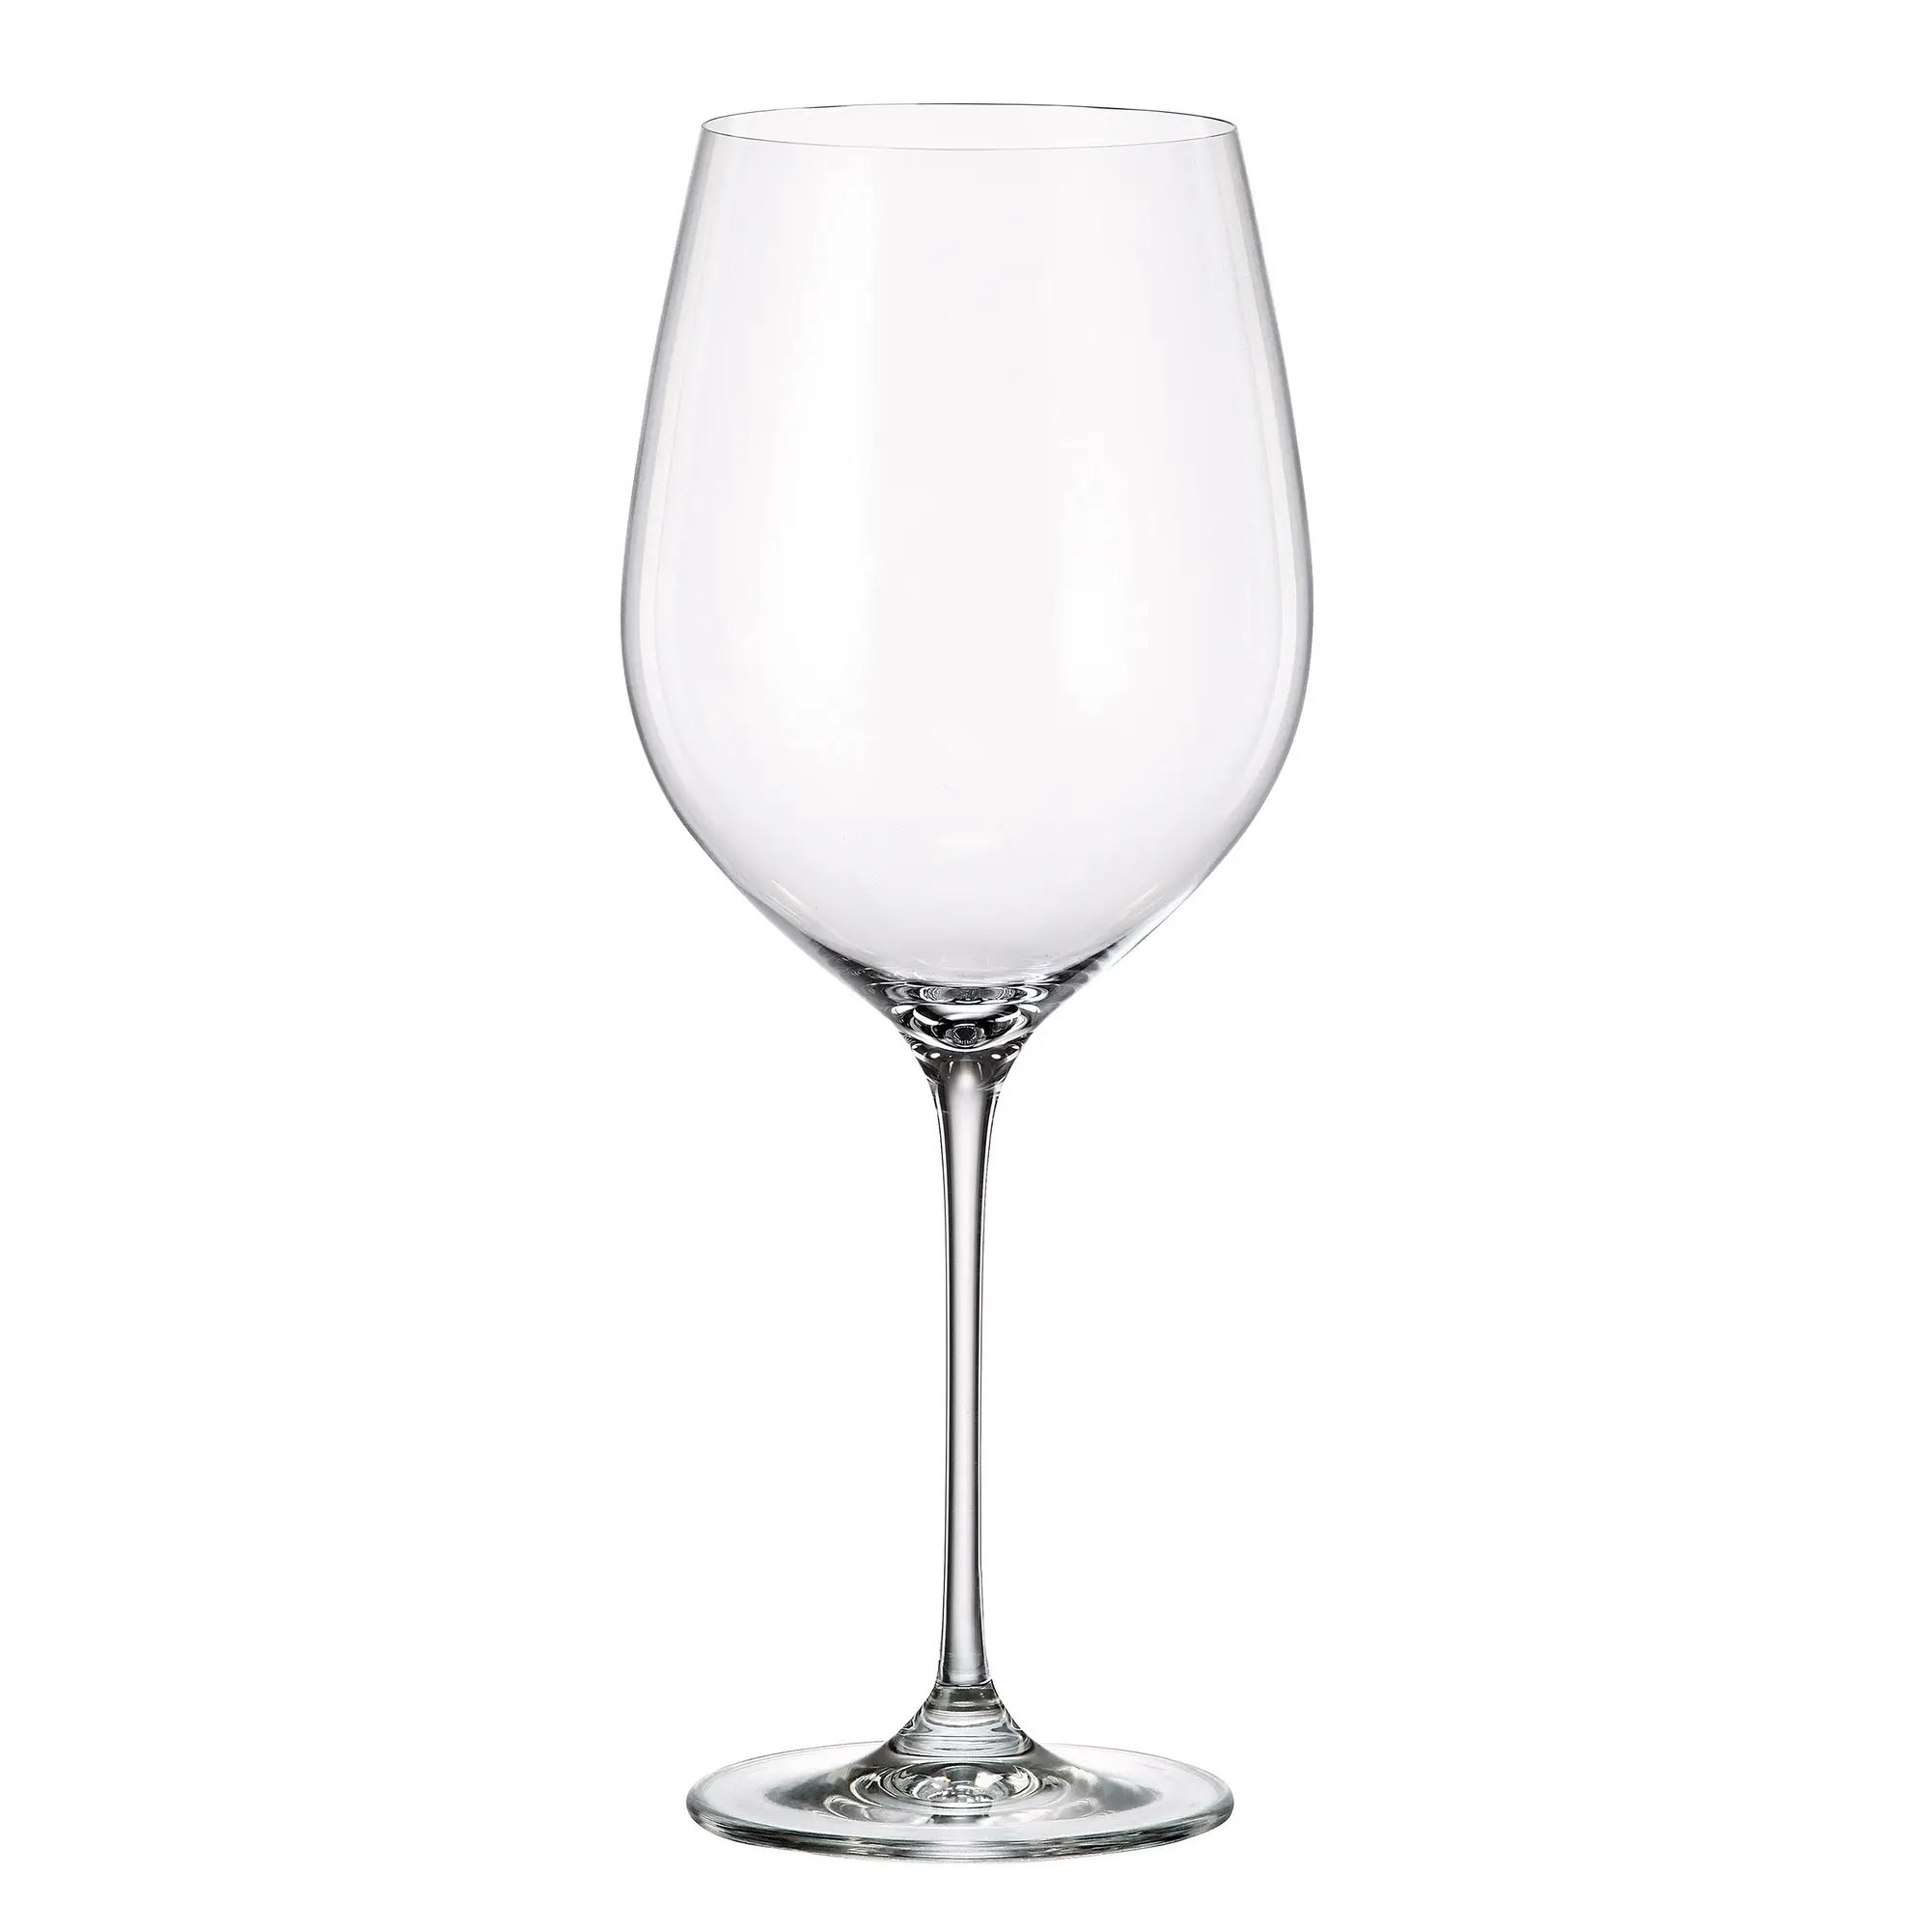 CYNA GLASS verre à vin rouge bordeaux cristal sans plomb collection URIA 740ml carre